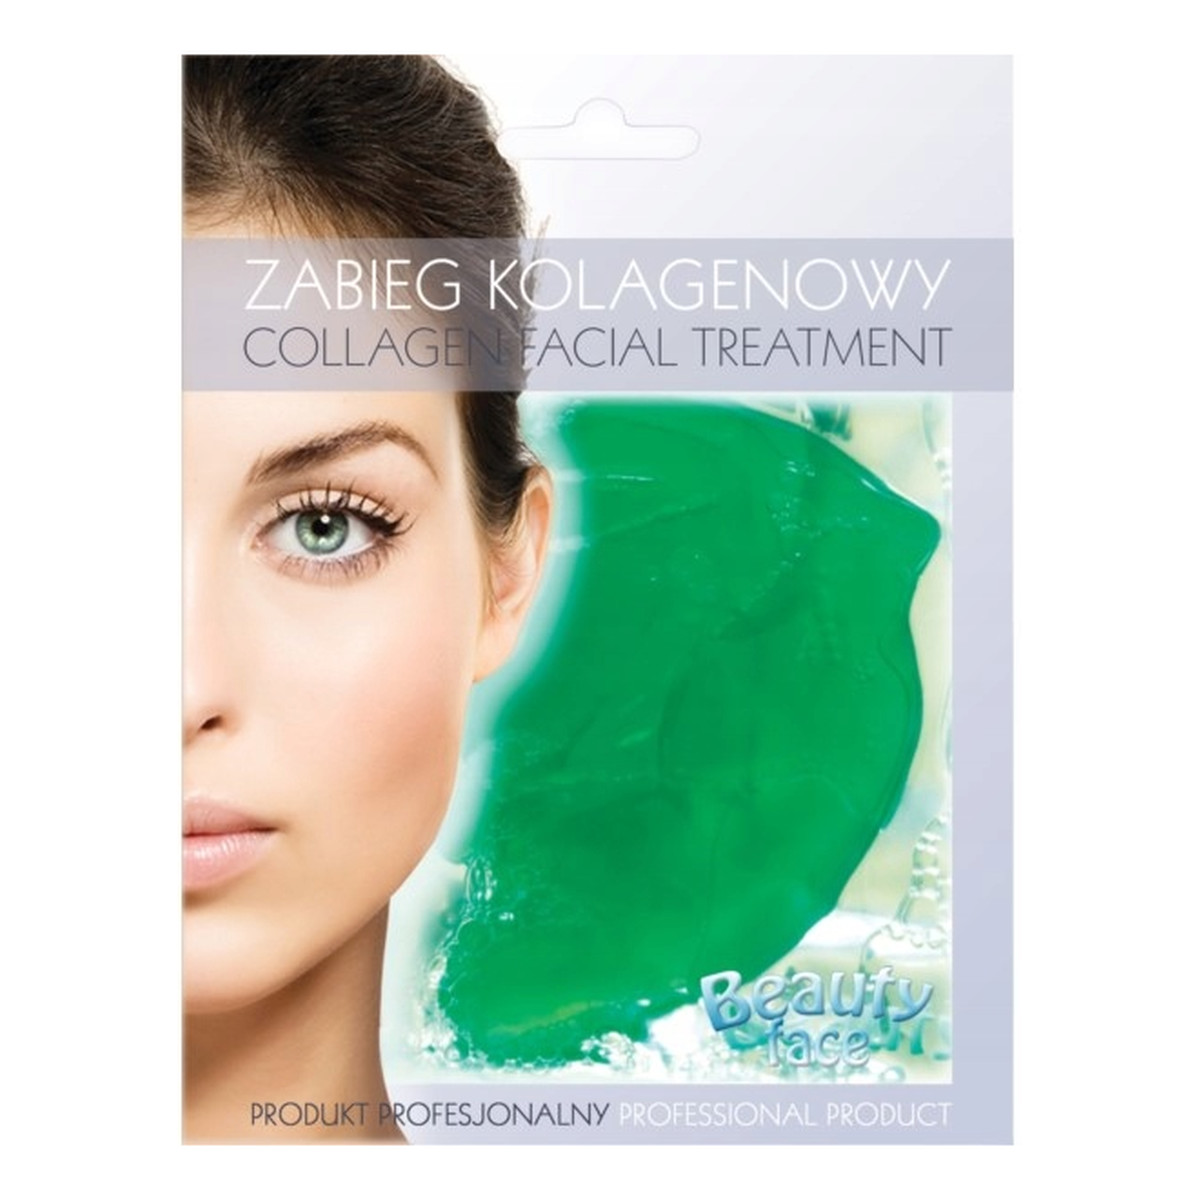 Beauty Face Collagen Facial Treatment odżywczy zabieg kolagenowy z ogórkiem i algami w płacie hydrożelowym